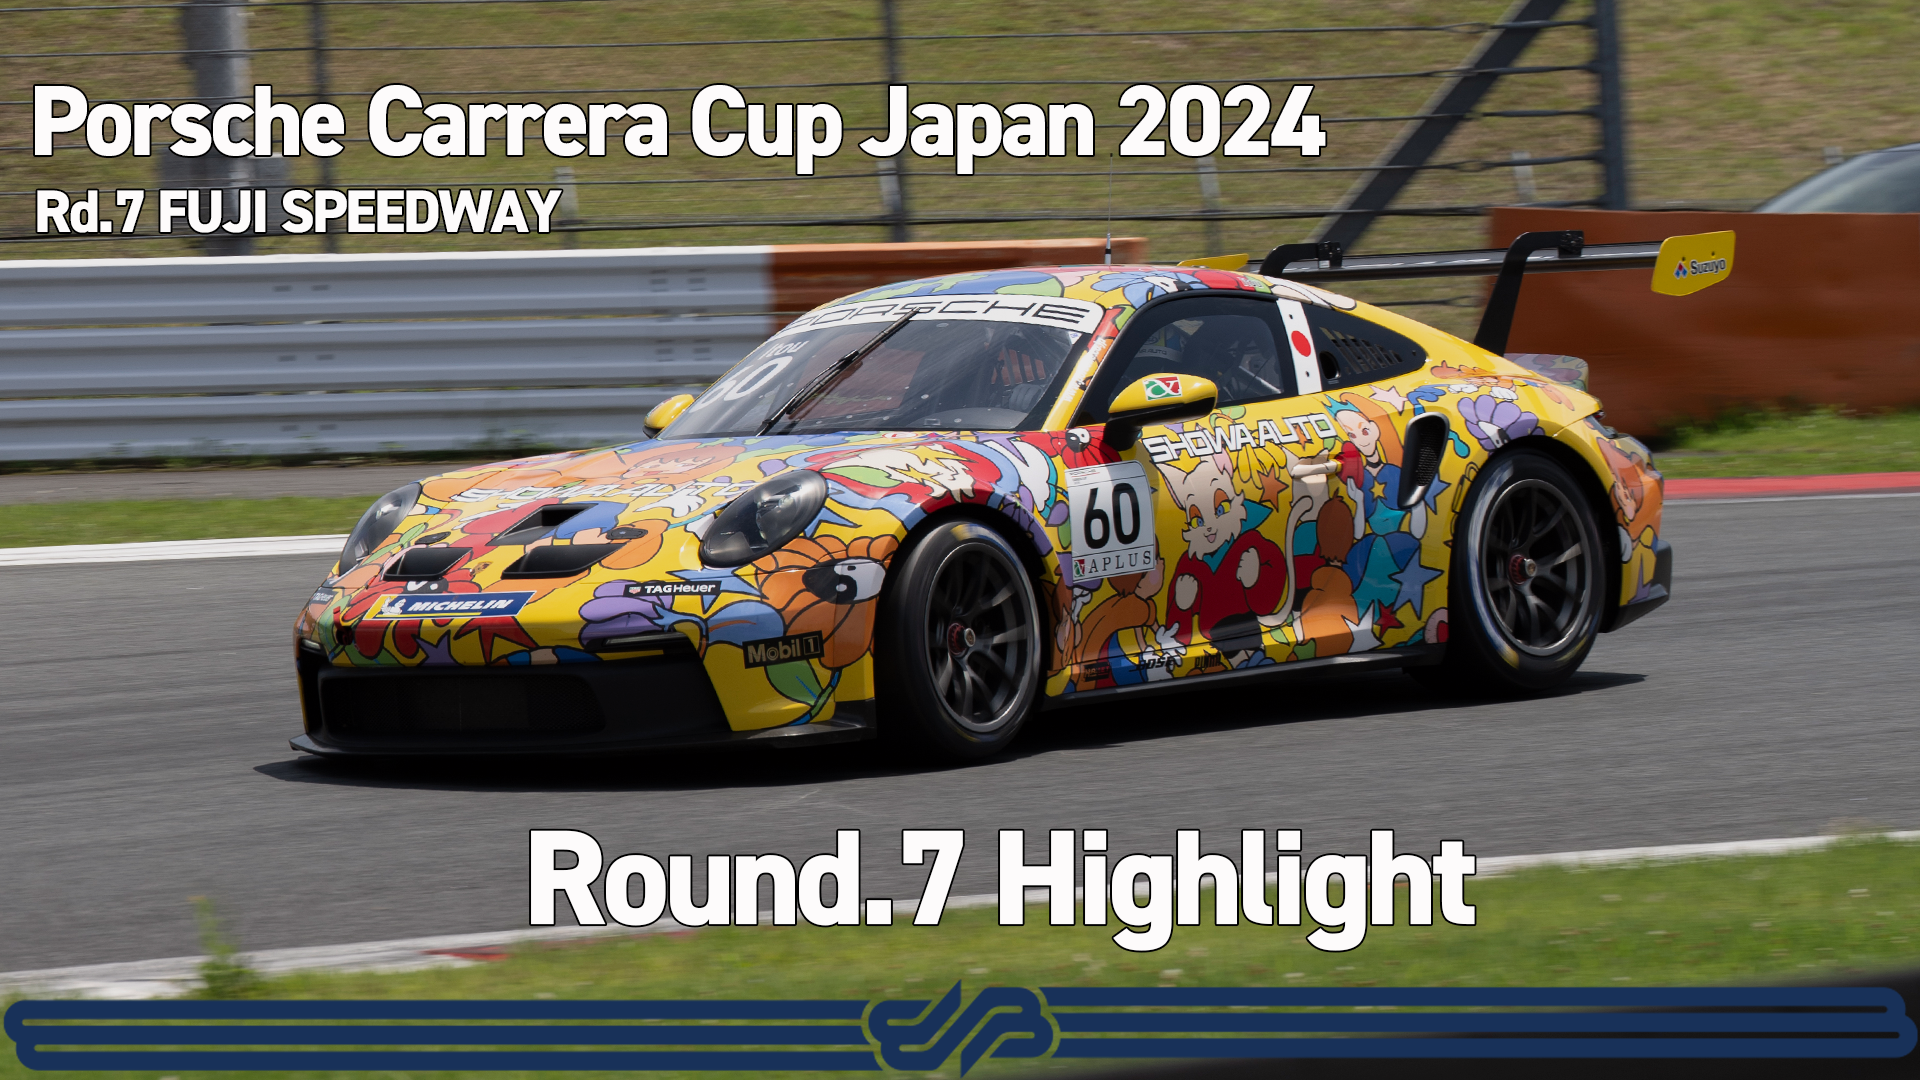 【Porsche Carrera Cup Japan 2024】Rd.7 Highlight